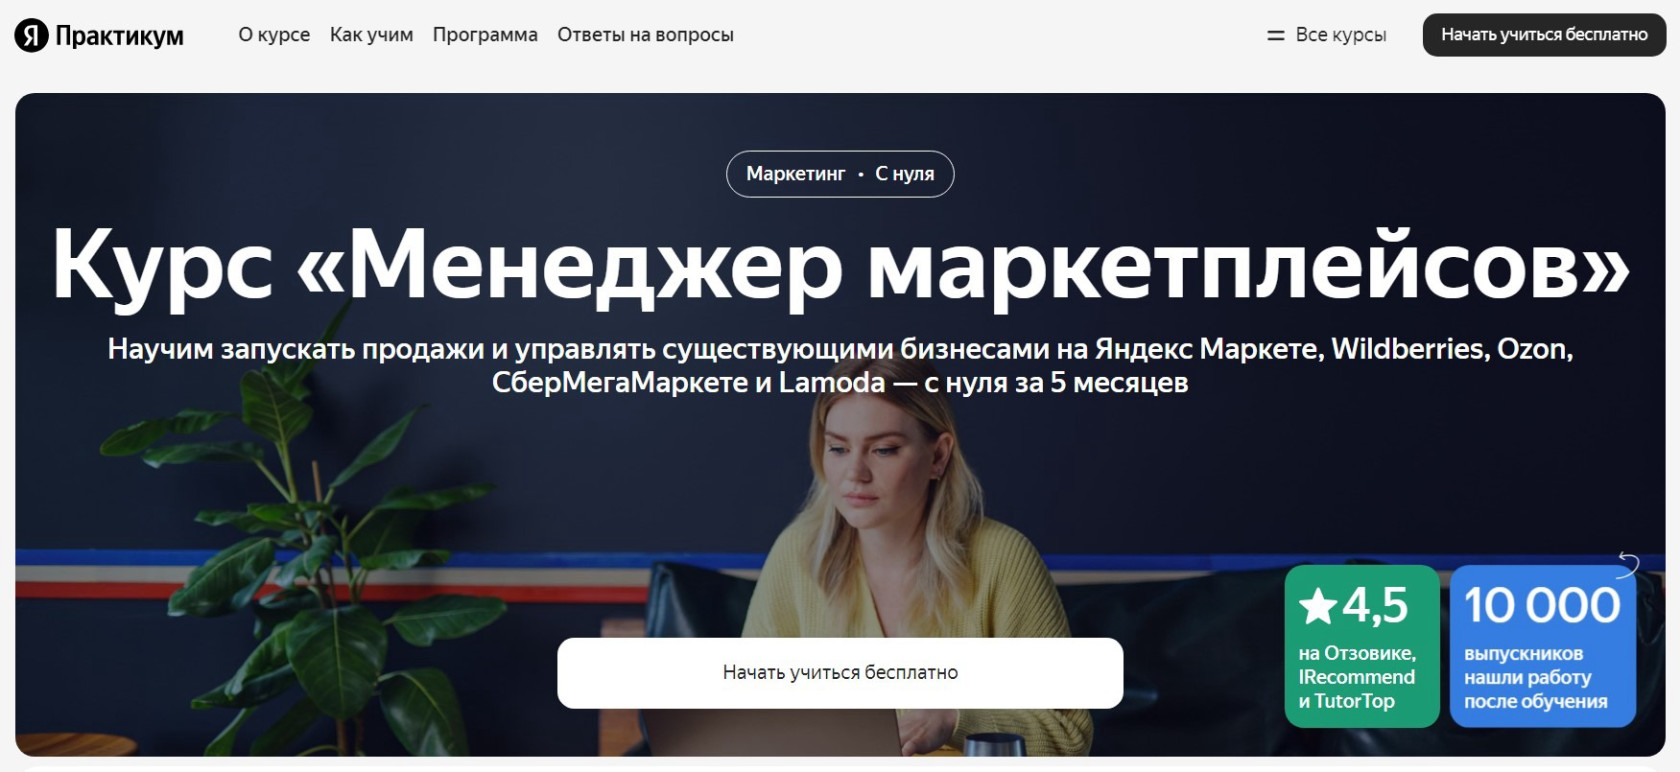 "Менеджер маркетплейсов" от Яндекс Практикума